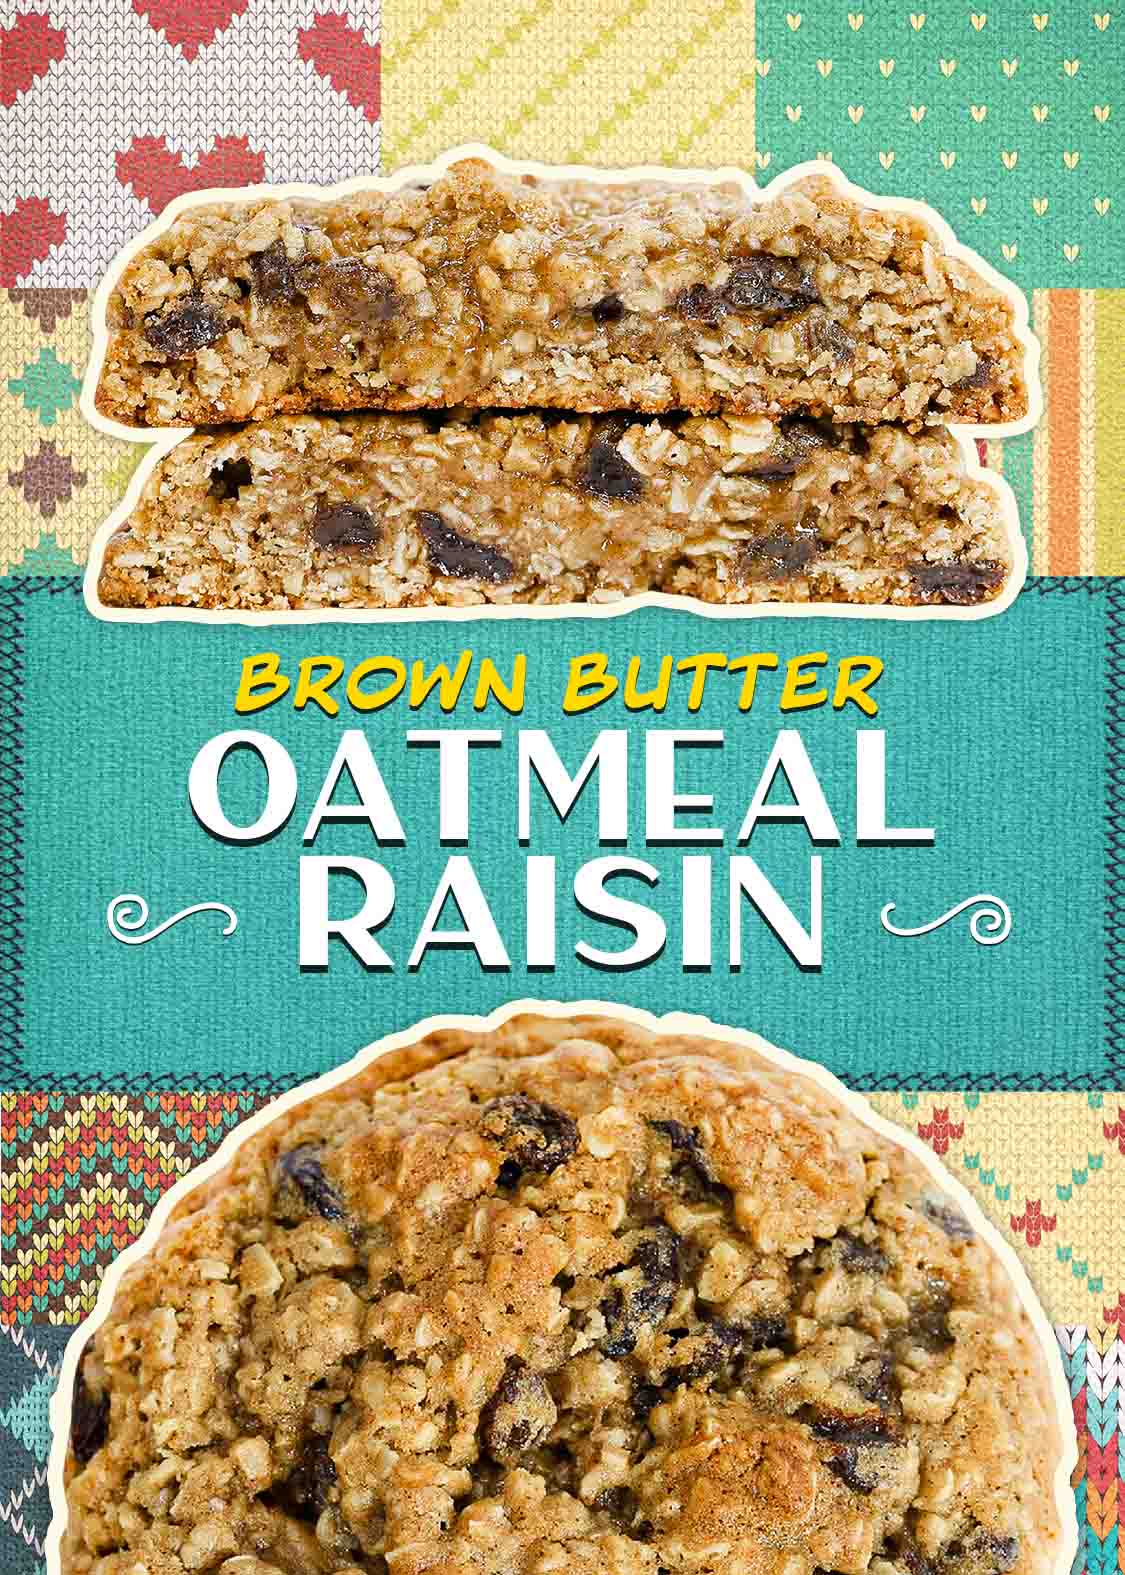 Brown Butter Oatmeal Raisin